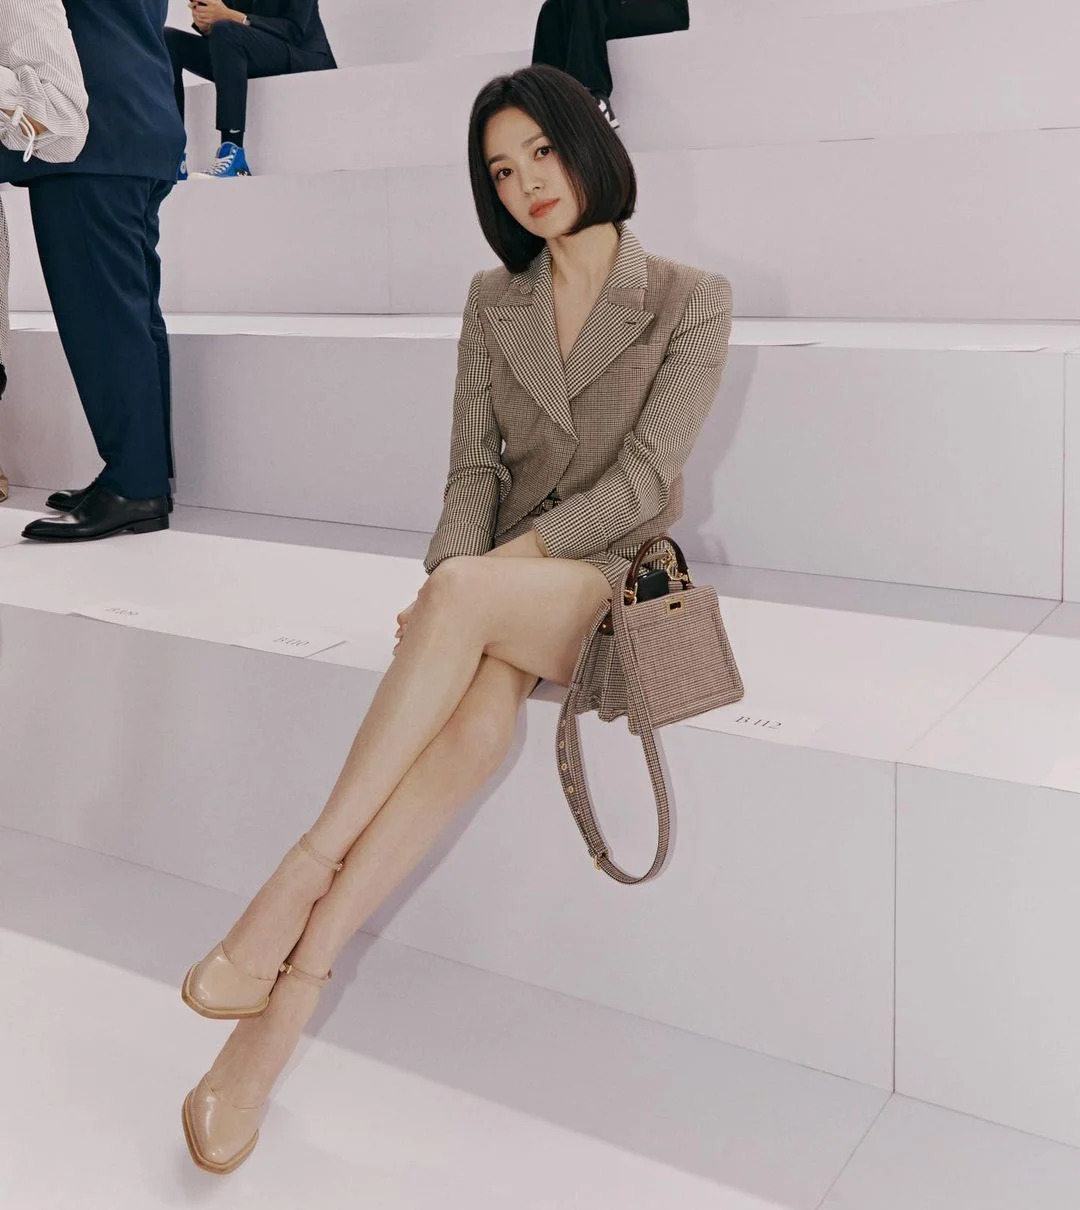 7749 outfit đẳng cấp chứng minh Song Hye Kyo là đại sứ hoàn hảo của Fendi - Ảnh 4.